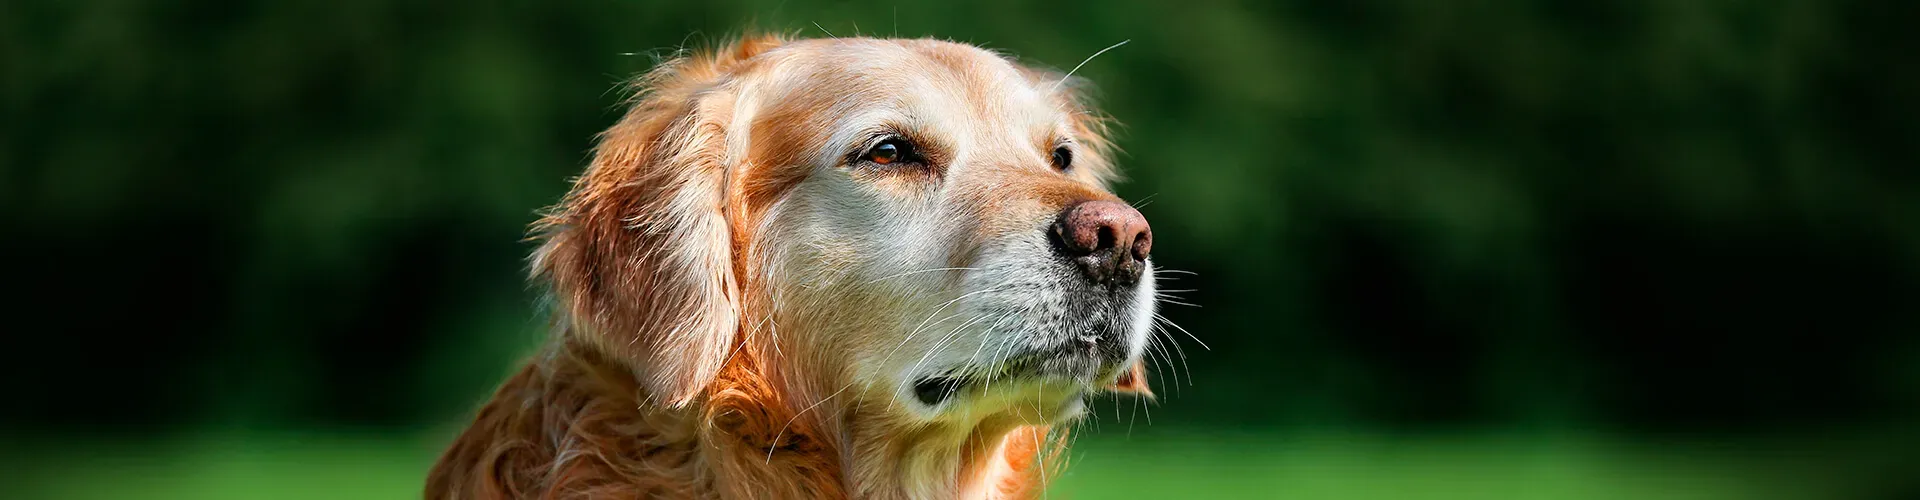 Saber cómo cuidar a un perro senior, como este labrador, hará que nuestras mascotas se sientan mejor en su vejez.